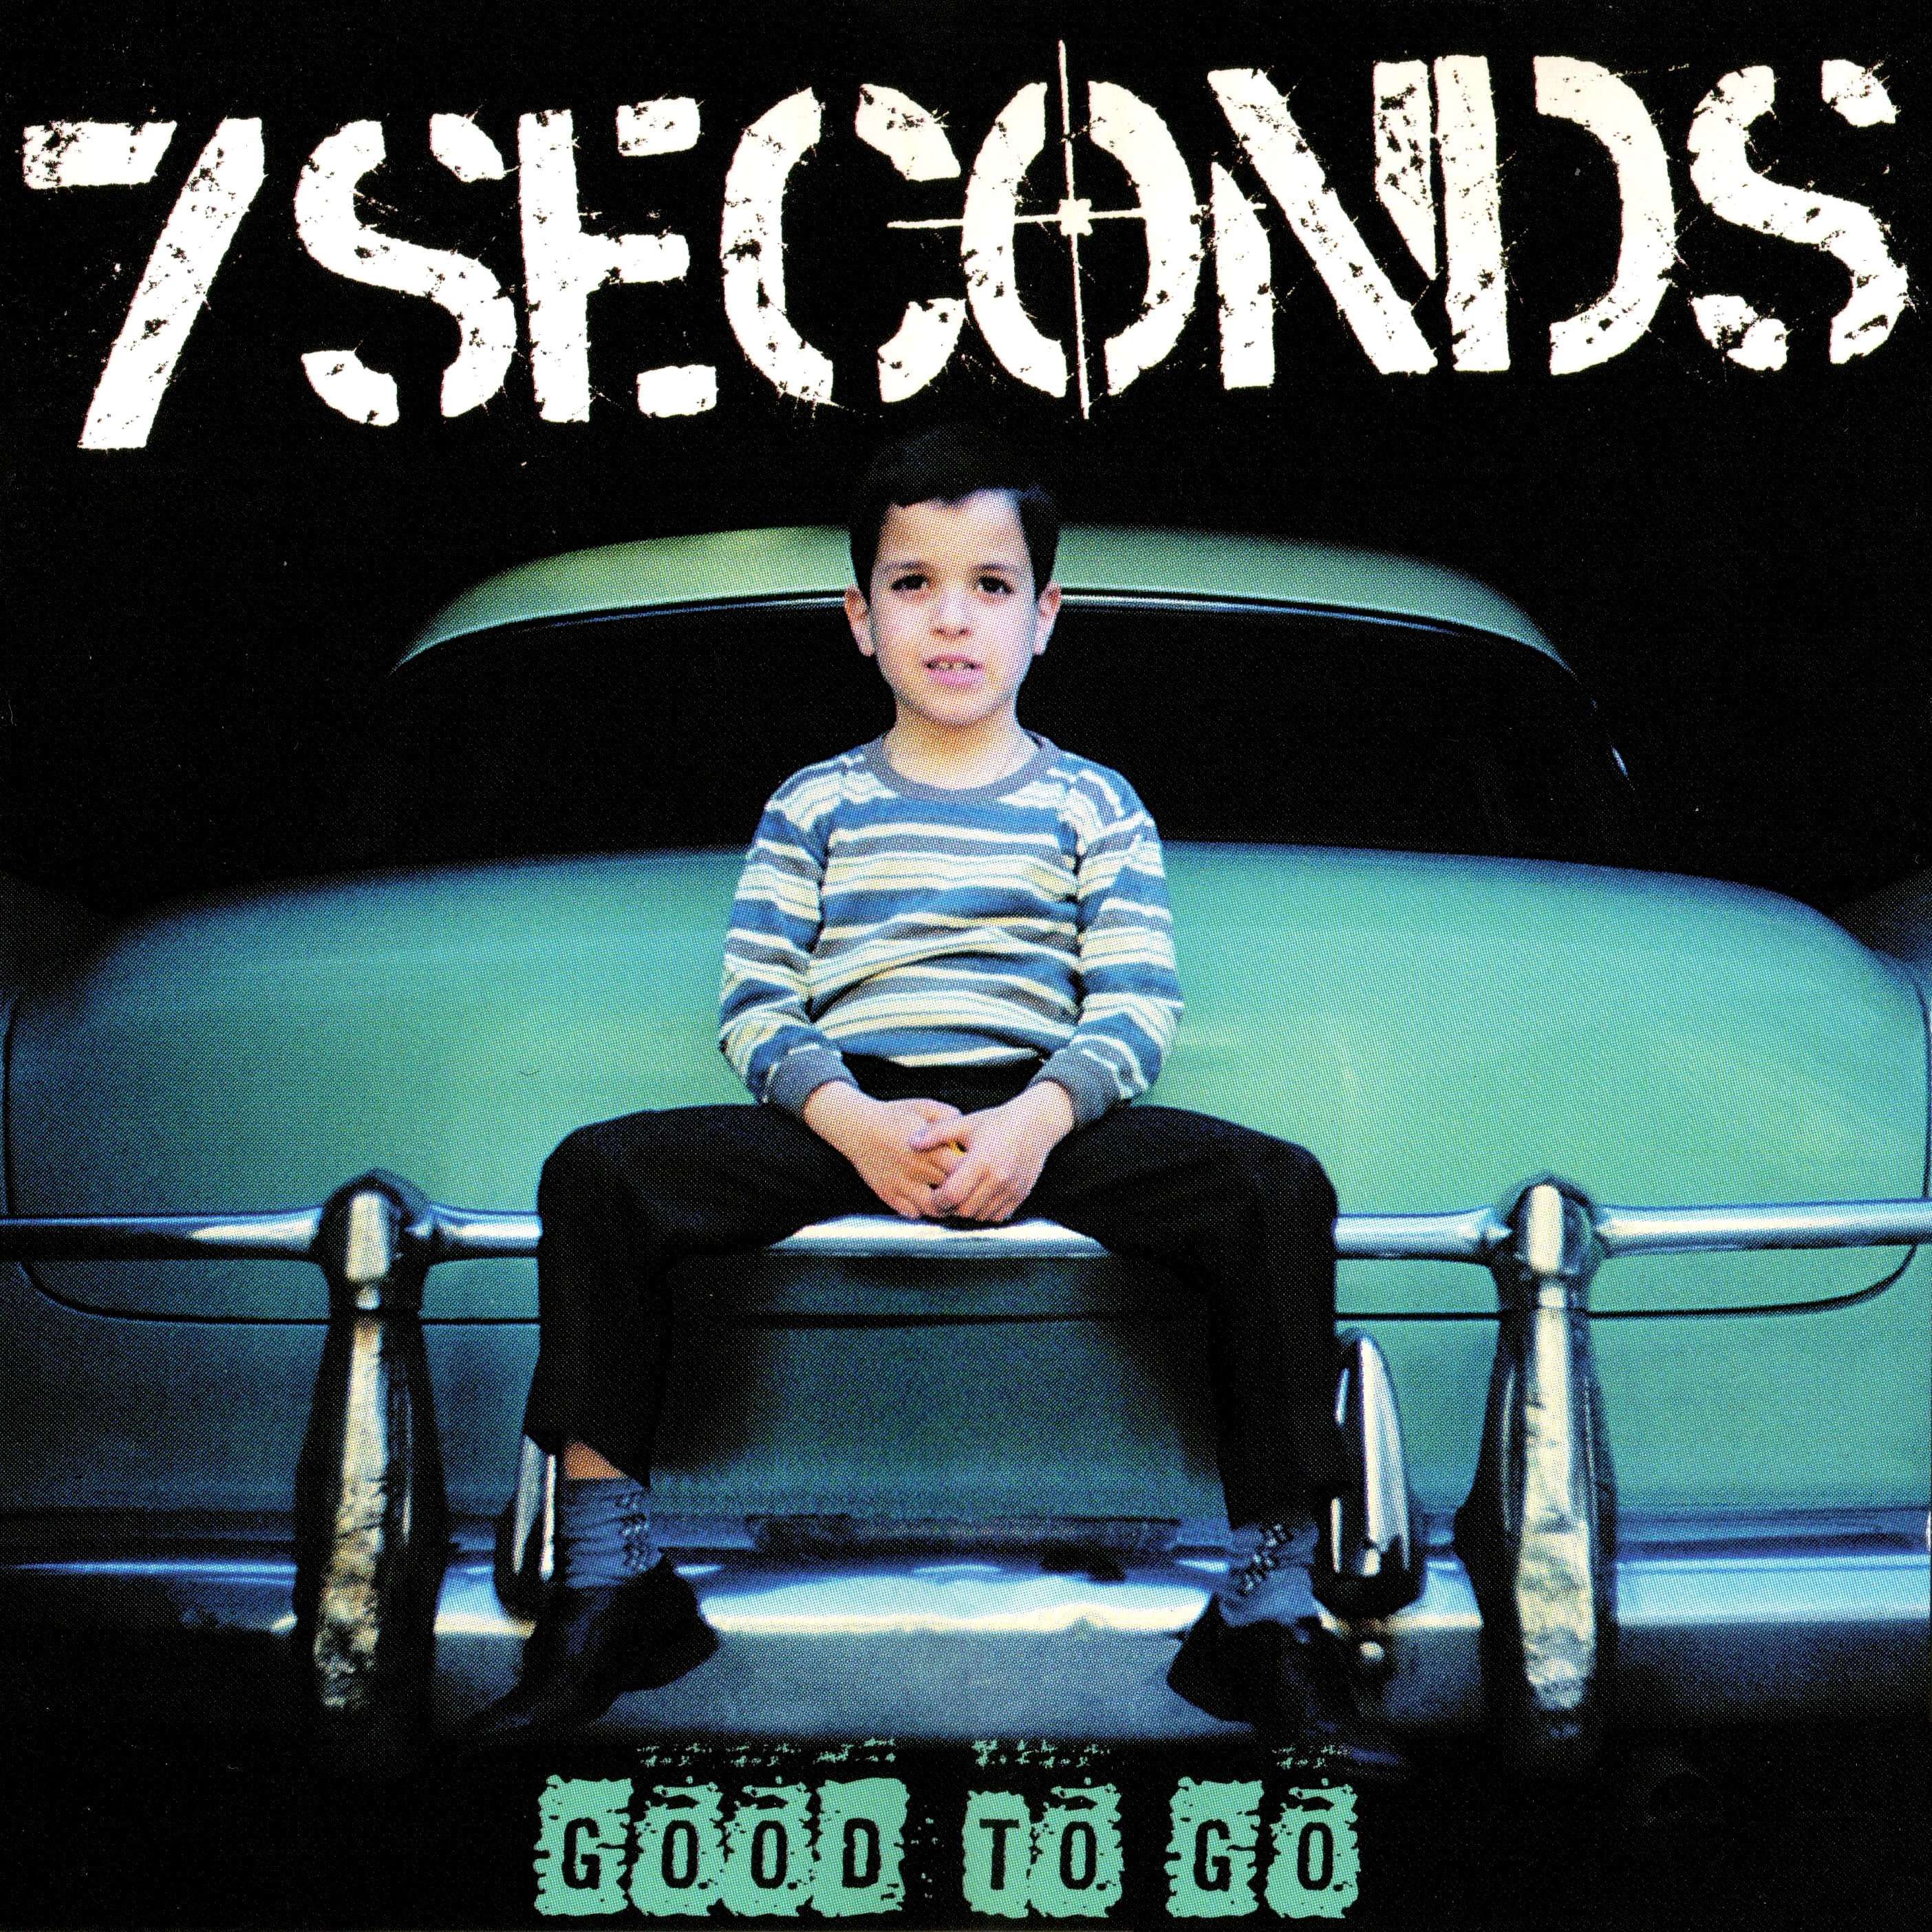 Семь секунд песня слушать. 7 Seconds. Певец Seven second. Семь секунд песня. 7 Seconds обложка.